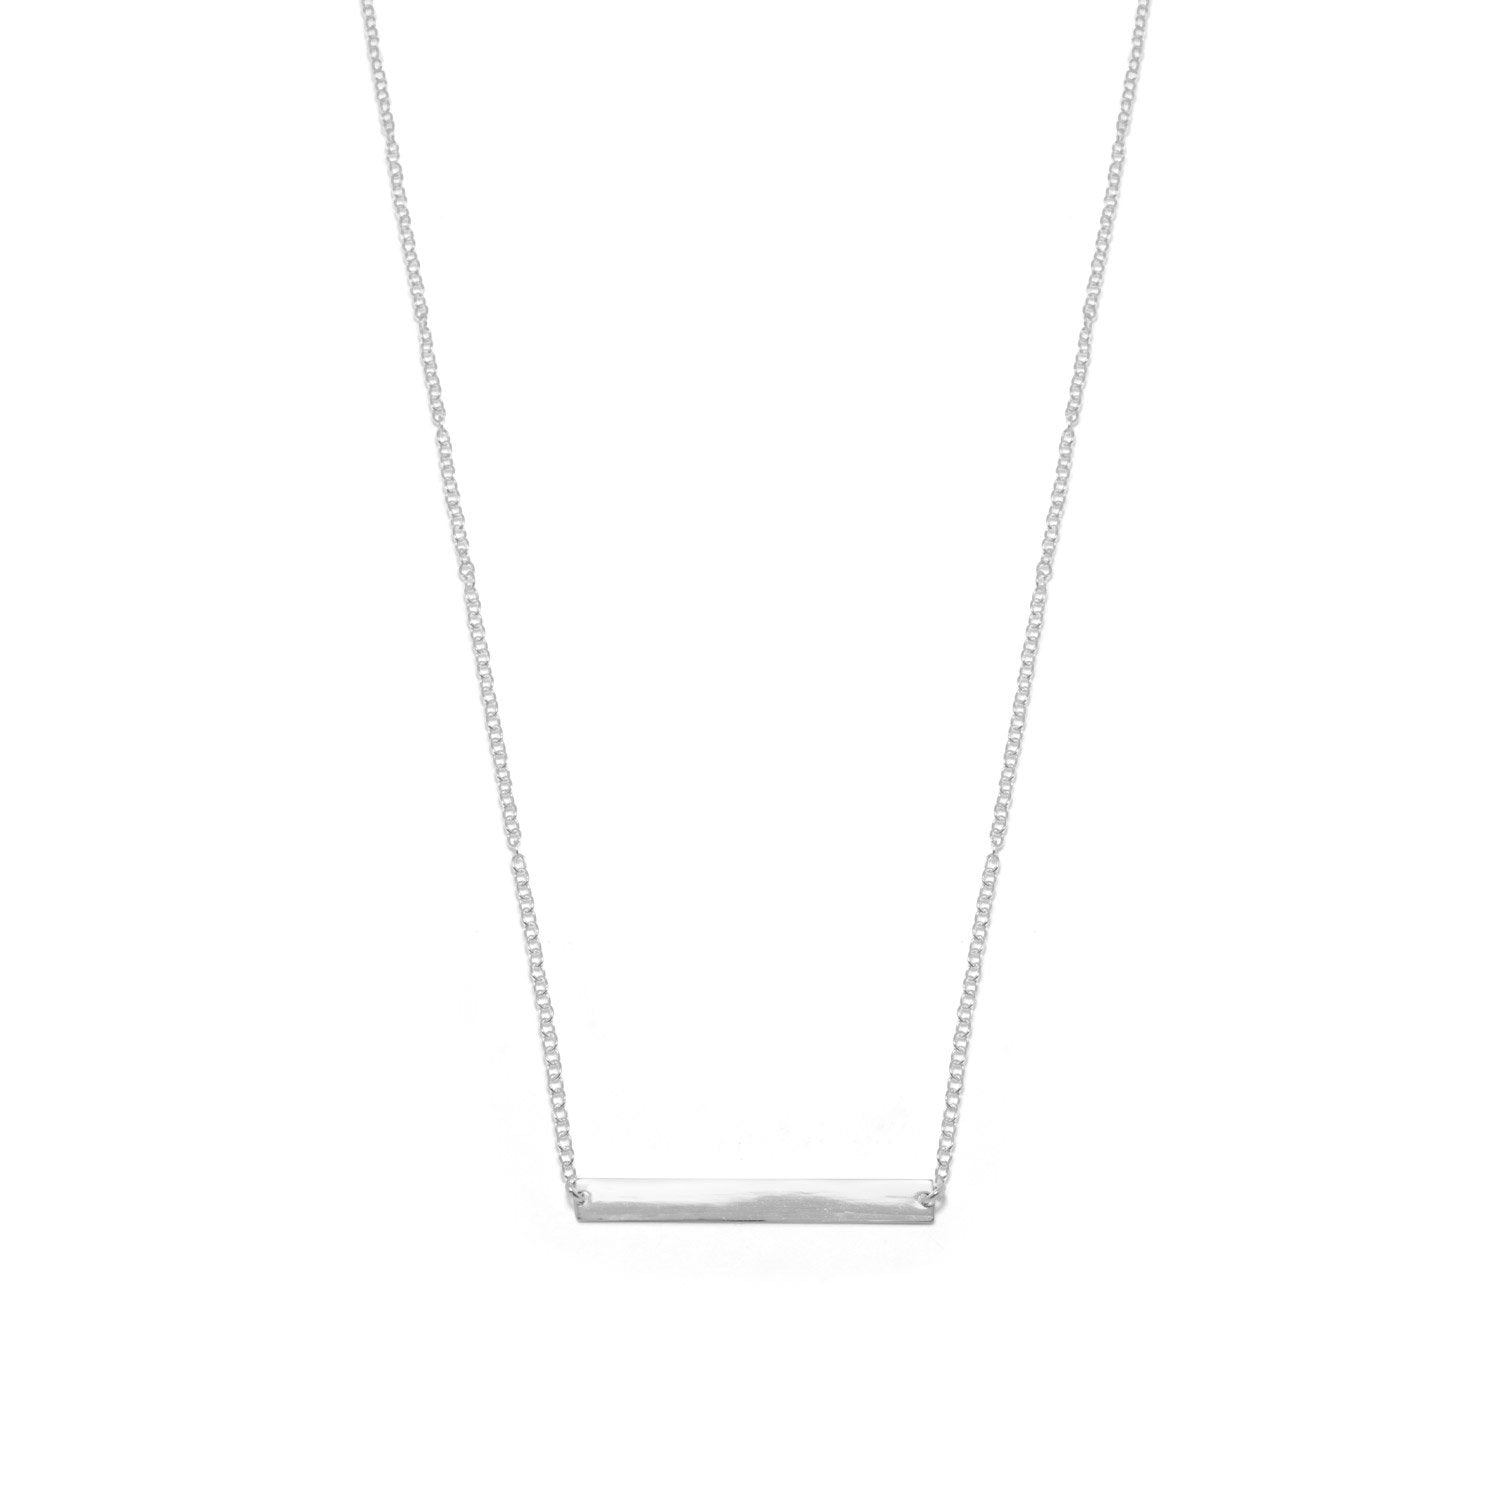 16" + 2" Thin Bar Nameplate Necklace - Joyeria Lady